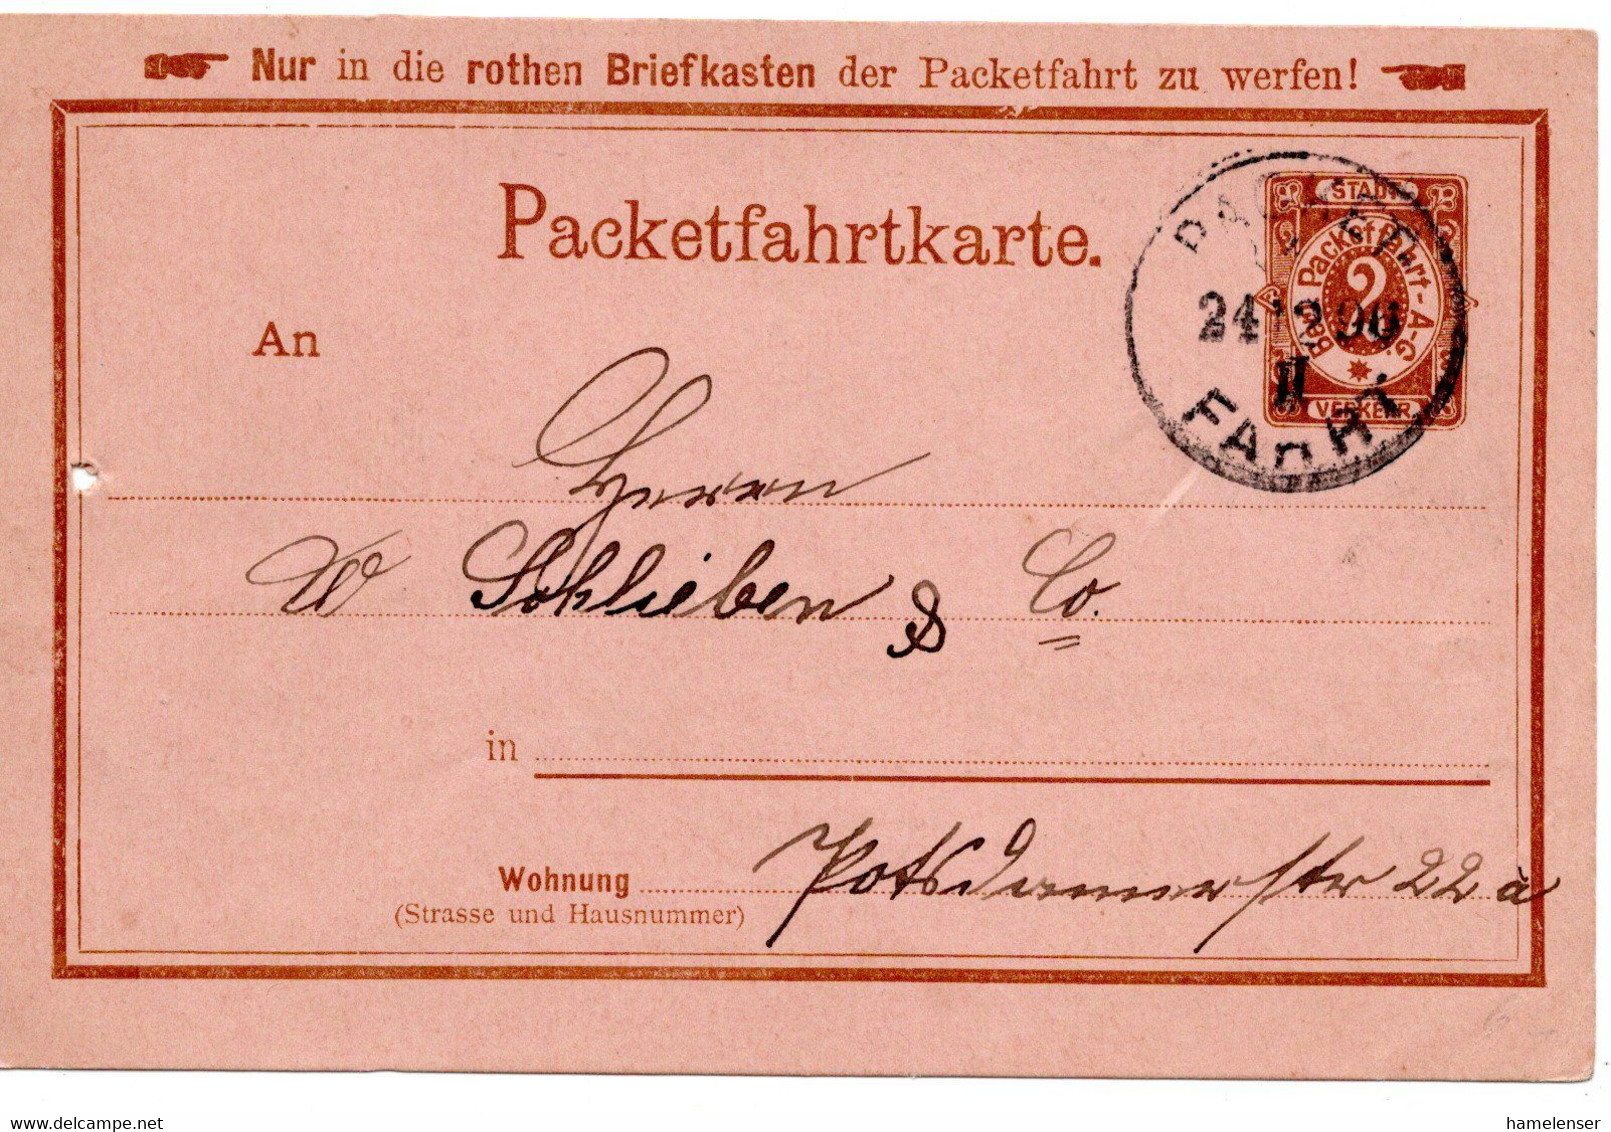 55430 - Deutsches Reich / Berliner Packetfahrt - 1896 - 2Pfg. GAKte. PACKET FAHRT - Privatpost